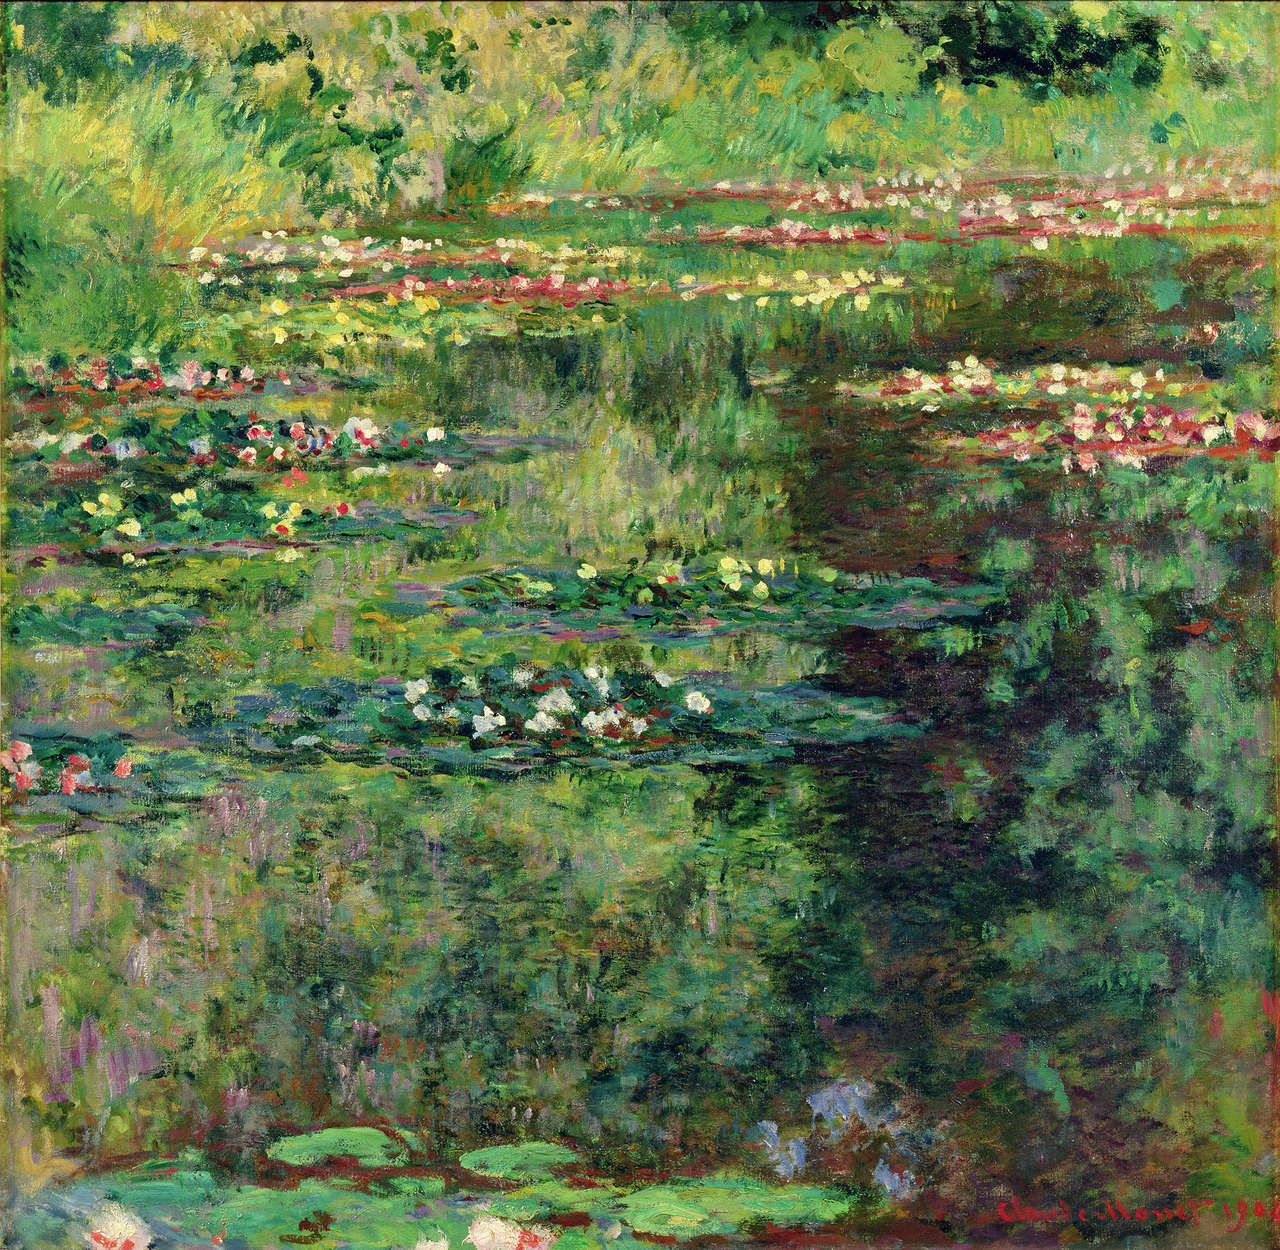             Papier peint panoramique "L'étang aux nymphéas" de Claude Monet
        